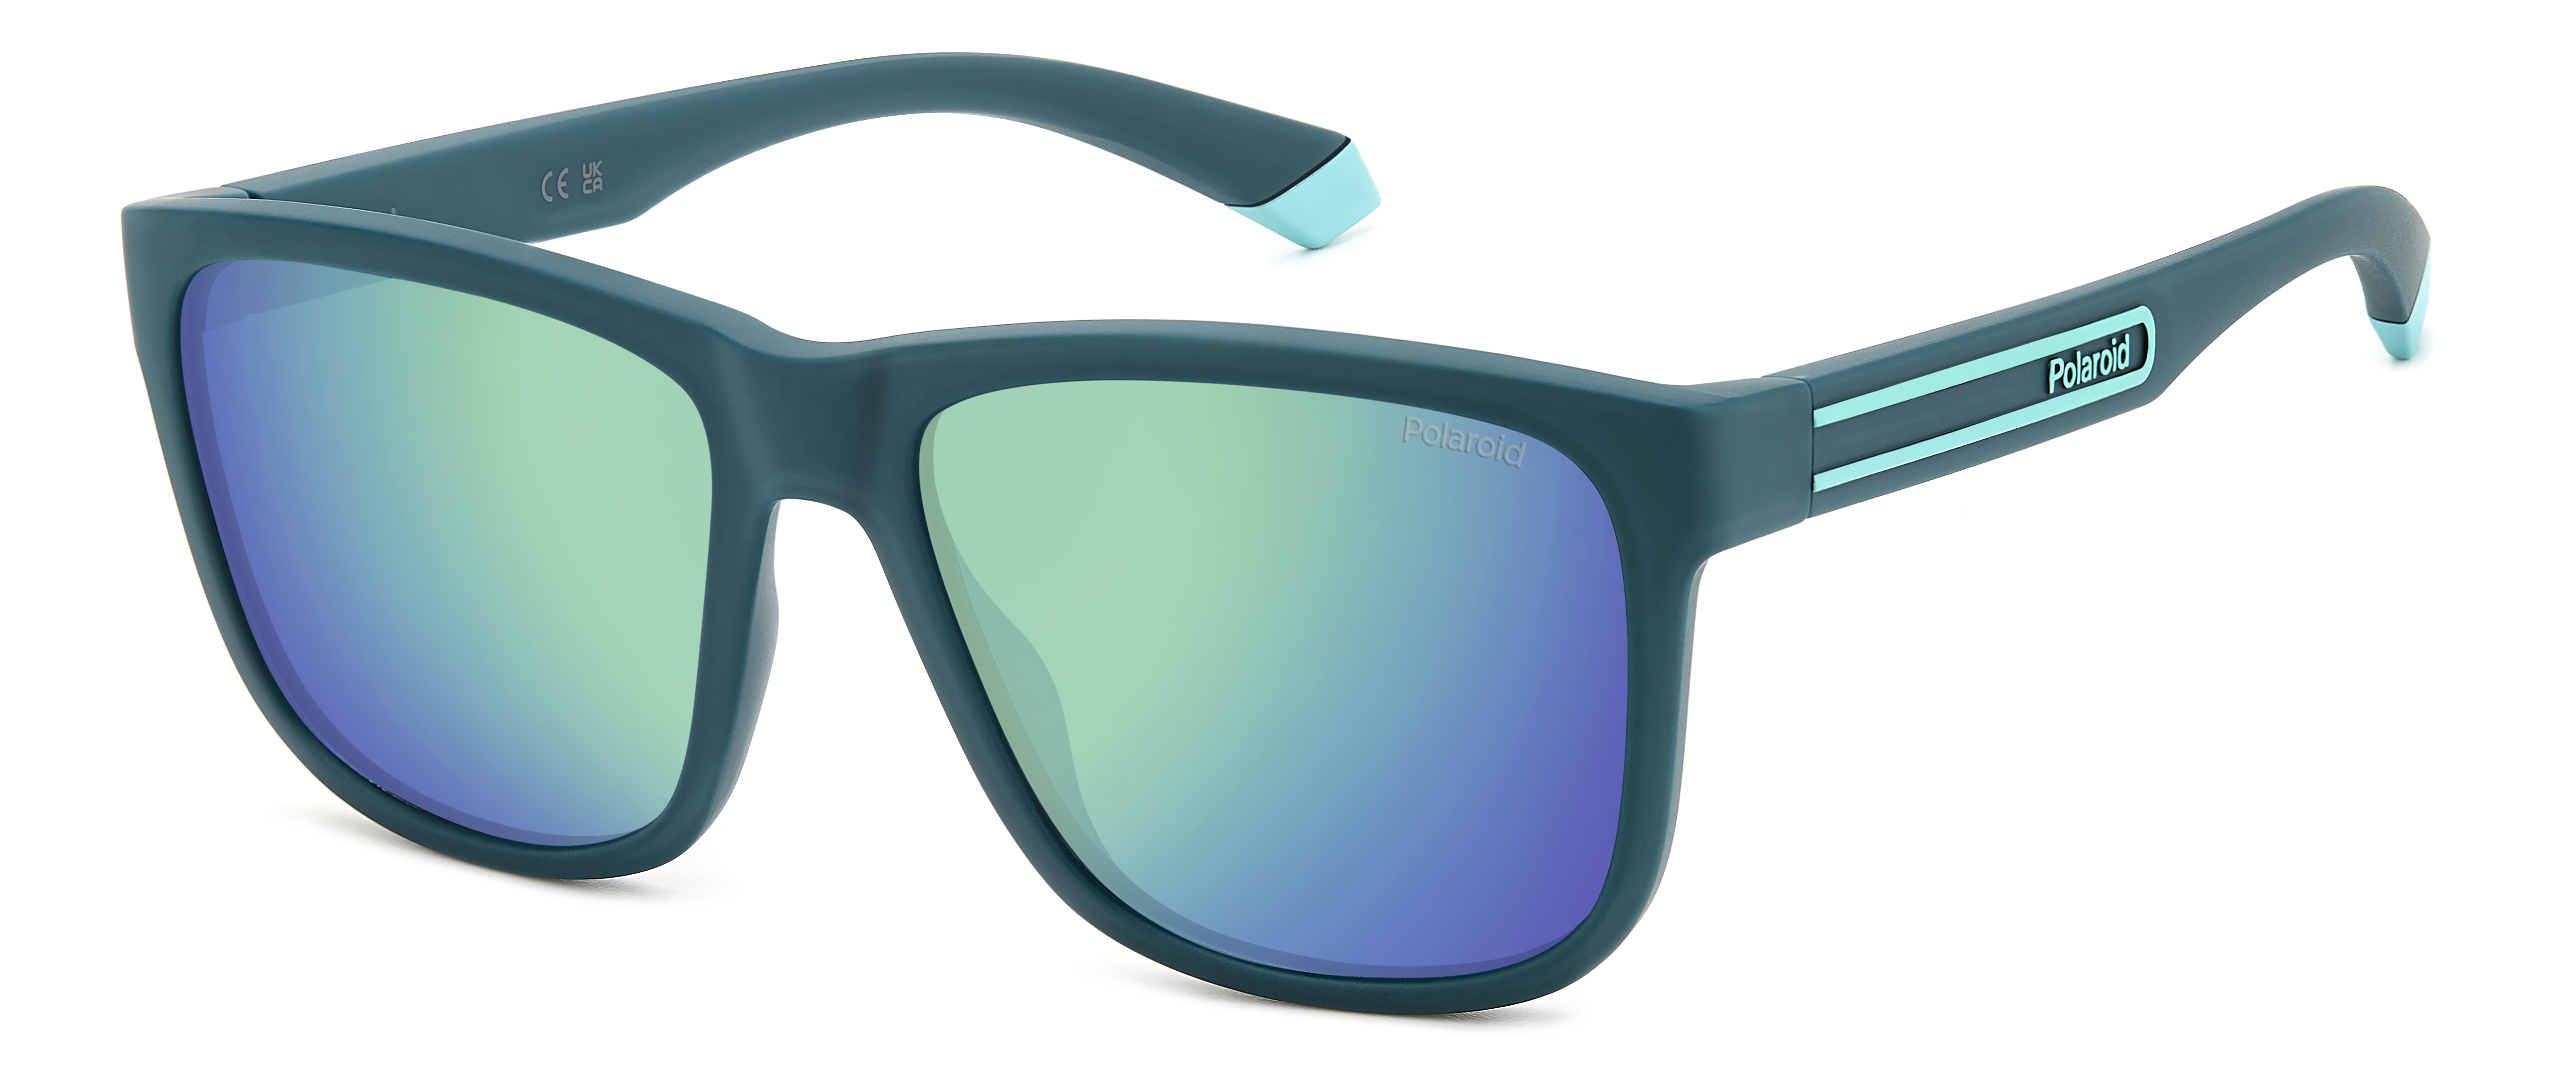 Солнцезащитные очки мужские Polaroid 2155/S зеленые